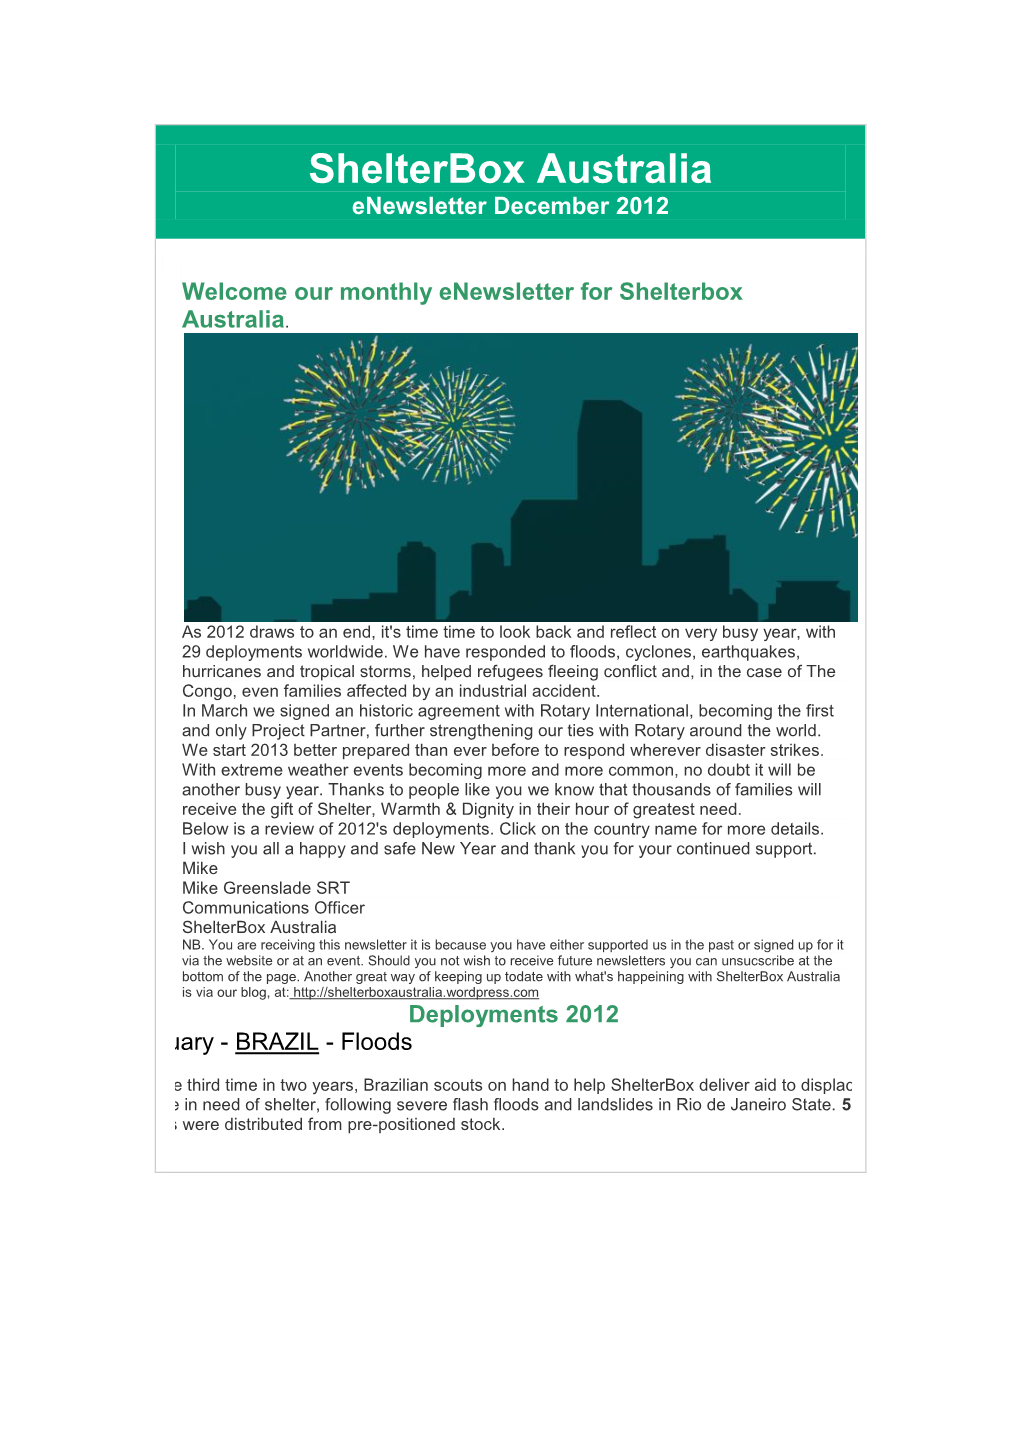 Shelterbox Australia Enewsletter December 2012